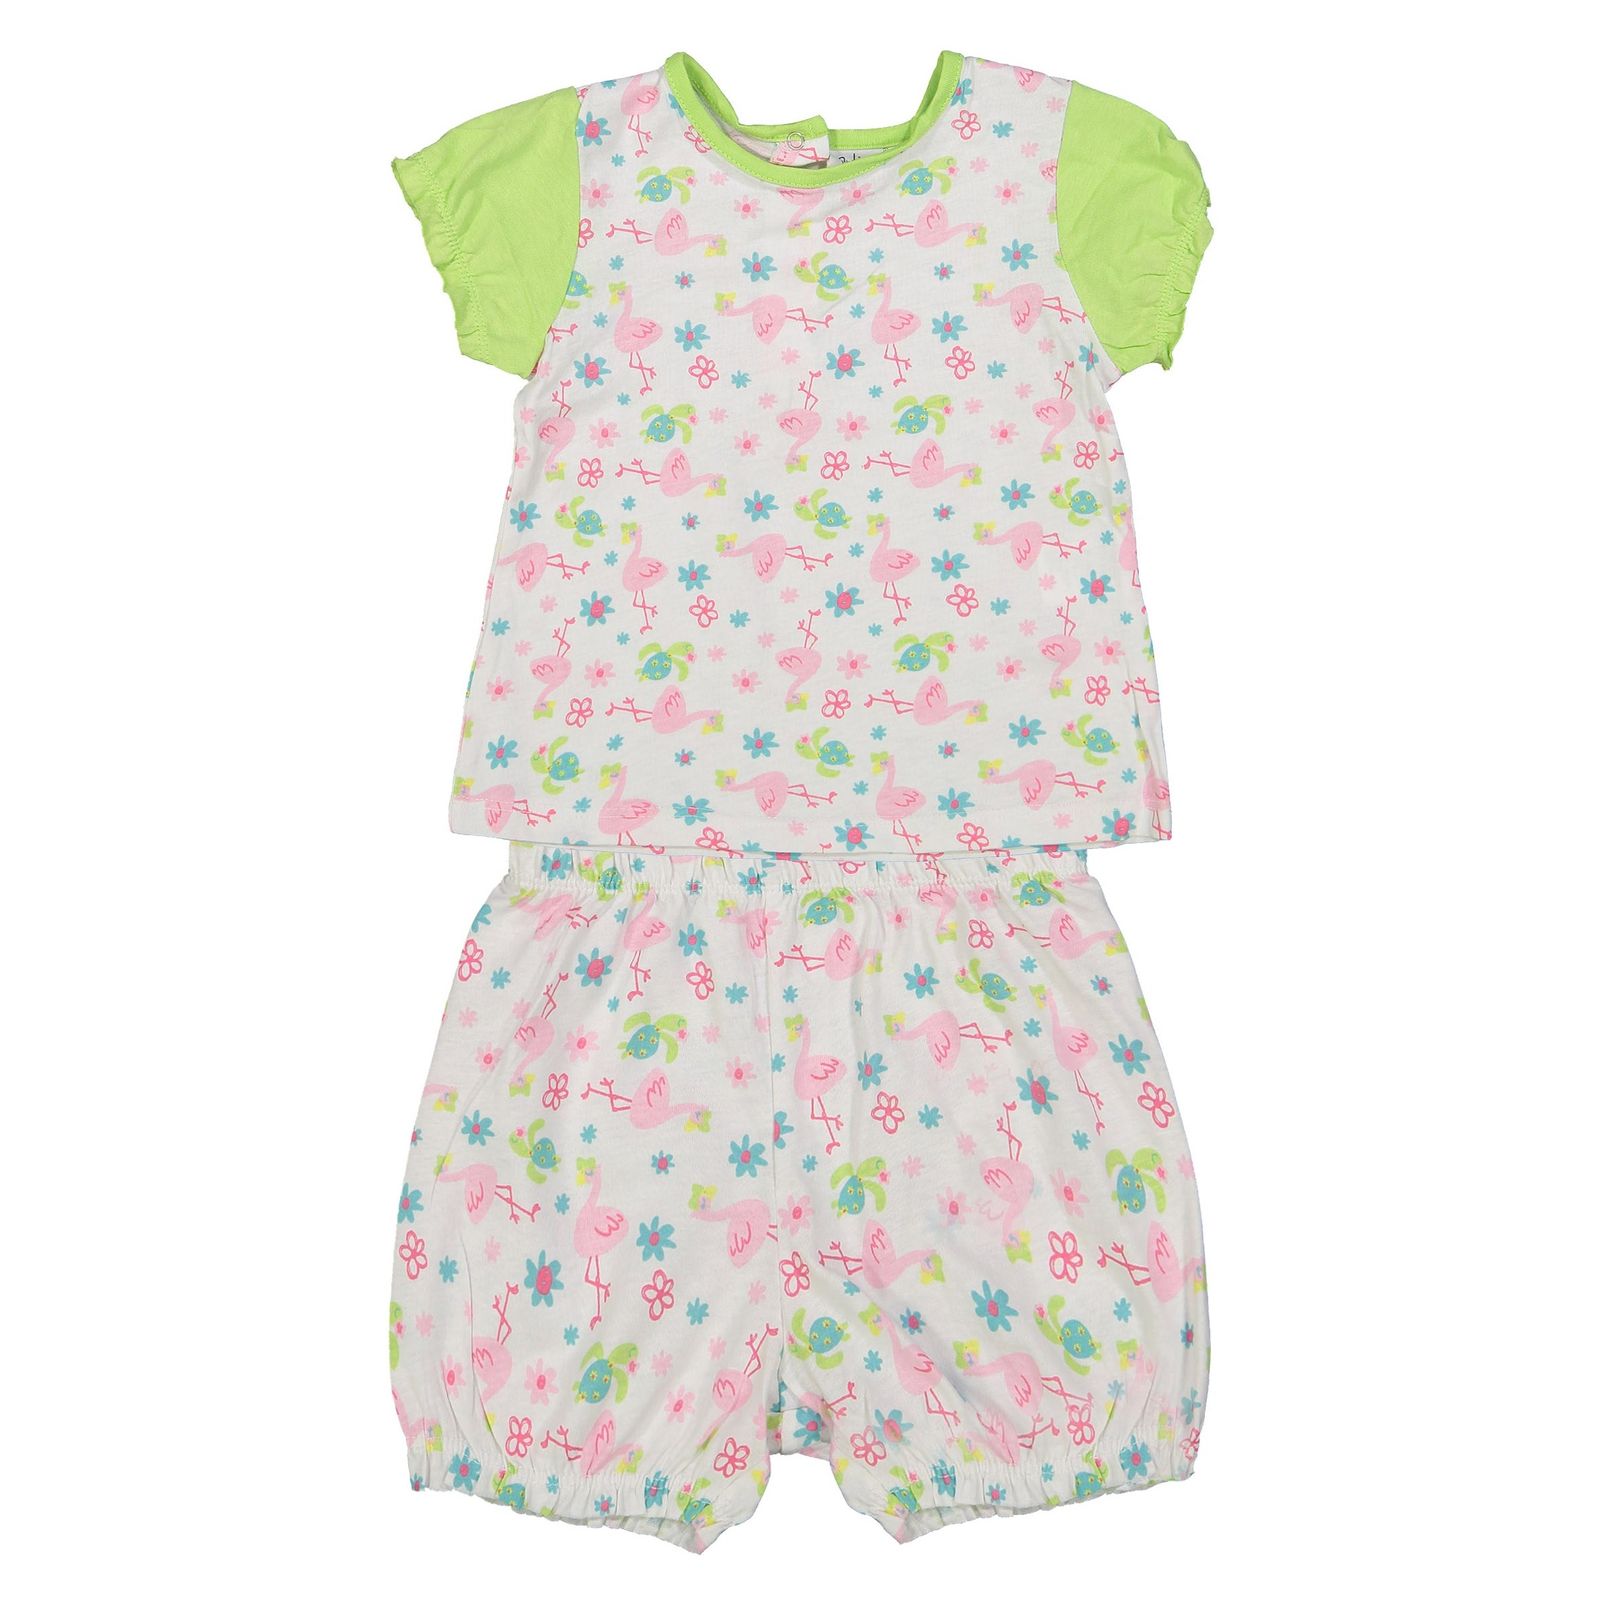 تی شرت و شلوارک نخی نوزادی دخترانه بسته 2 عددی - بلوکیدز - سبز روشن و سفيد - 3